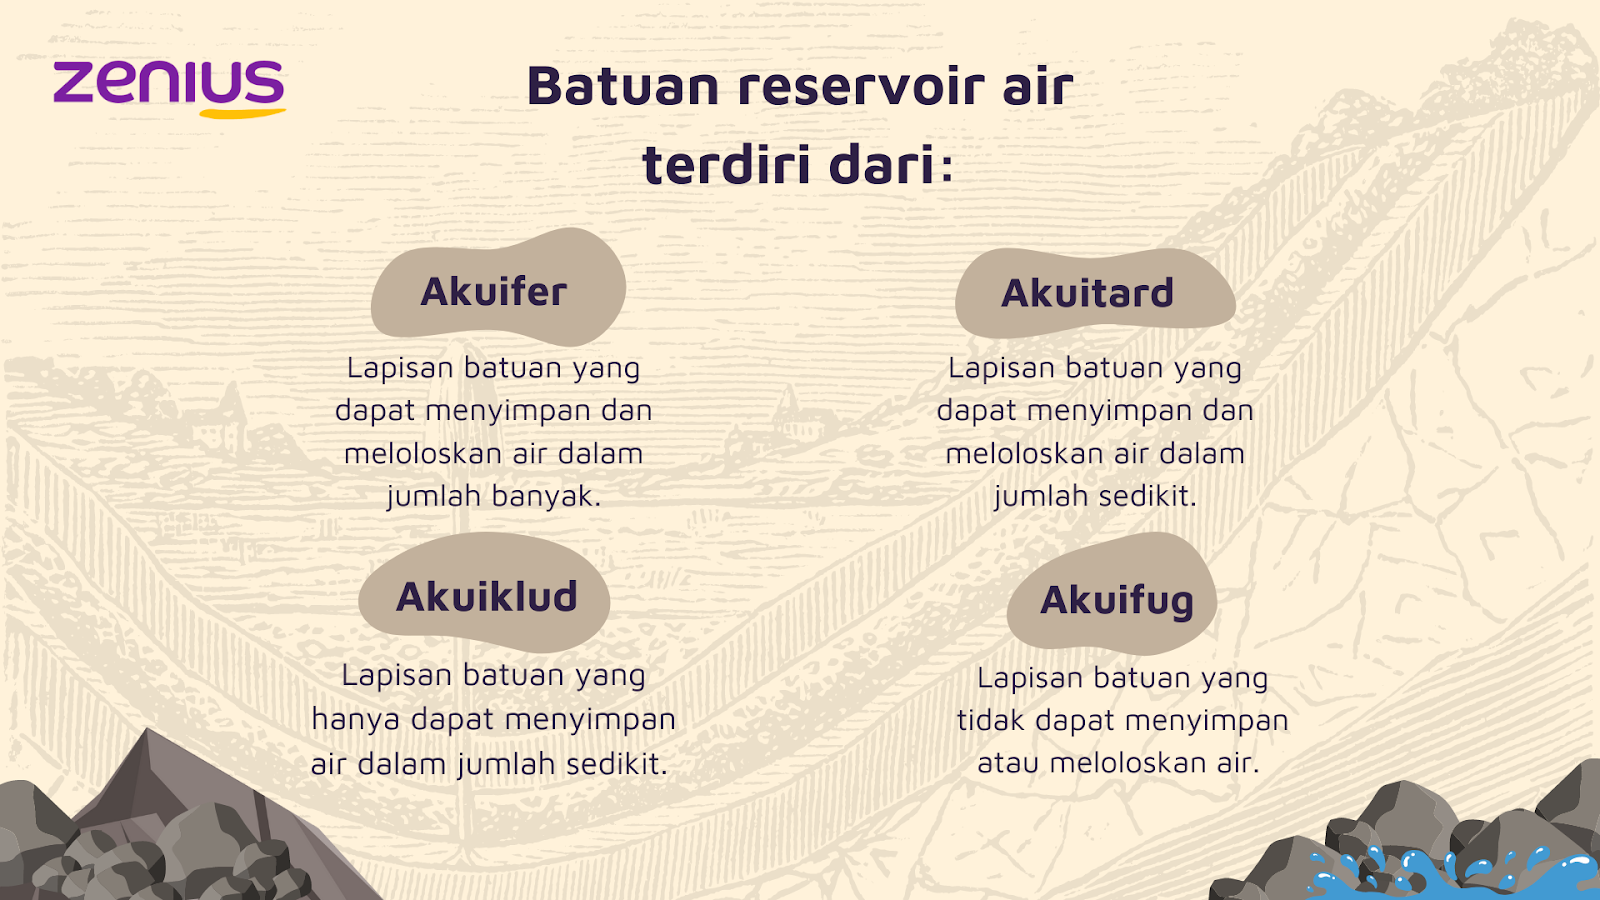 Batuan reservoir air terdiri dari akuifer, akuitard, akuiklud, dan akuifug.